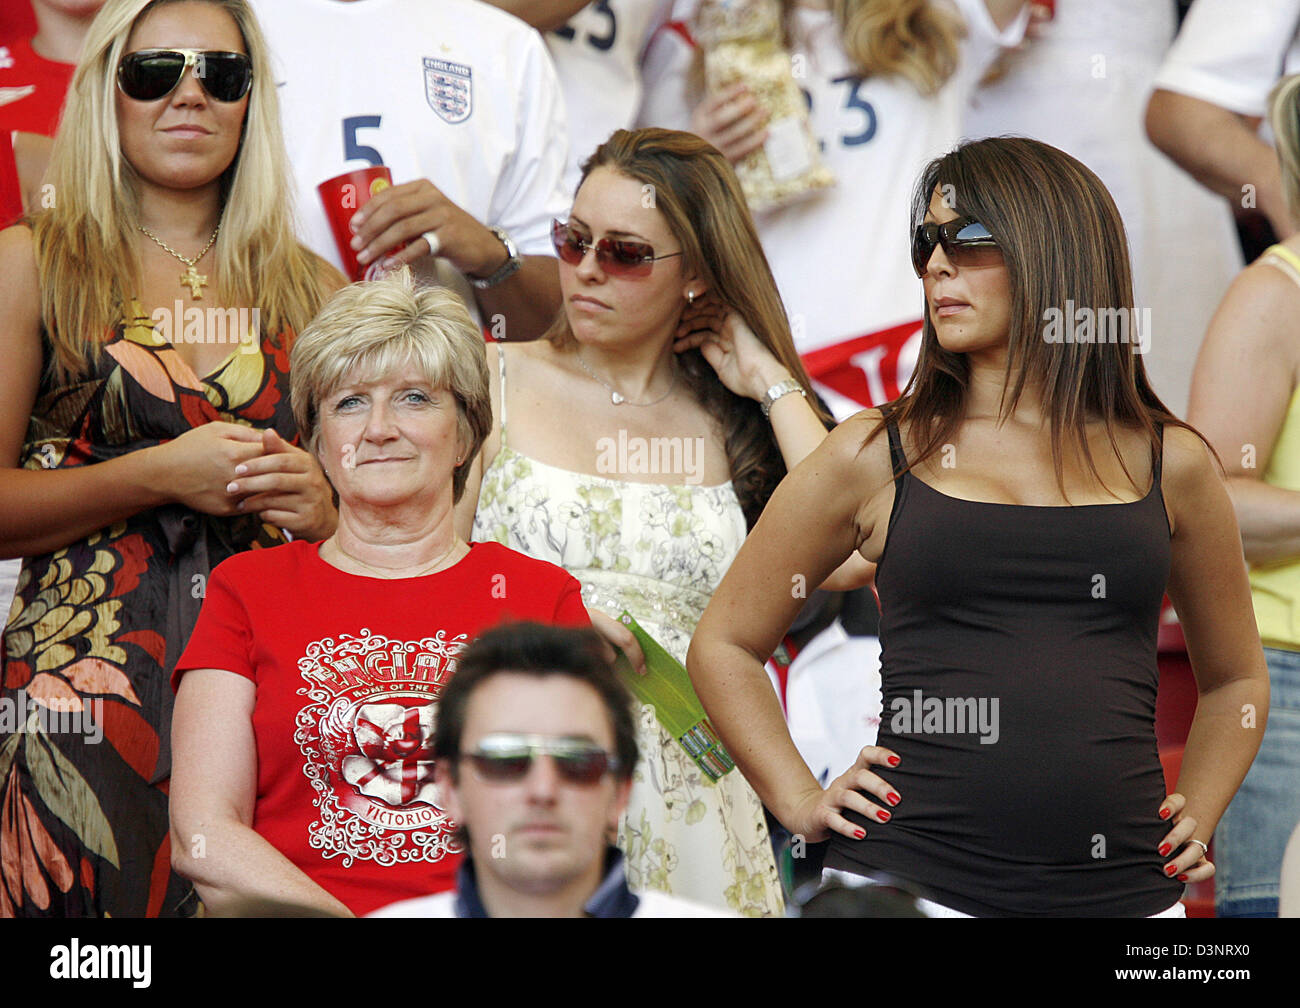 Sandra Beckham (chemise rouge), mère de David Beckham, se dresse sur la tribune VIP avant le 2ème tour de la Coupe du Monde de Football de 2006 entre l'Angleterre et l'Equateur à Stuttgart, Allemagne, le dimanche, 25 juin 2006. Alex Curran (L-R), petite amie de Steven Gerrard, une femme non identifiée et Elen Rives, fiancée de Frank Lampard debout à côté d'elle. DPA/RONALD WITTEK  + + + Mobile Services  + + + Pl Banque D'Images